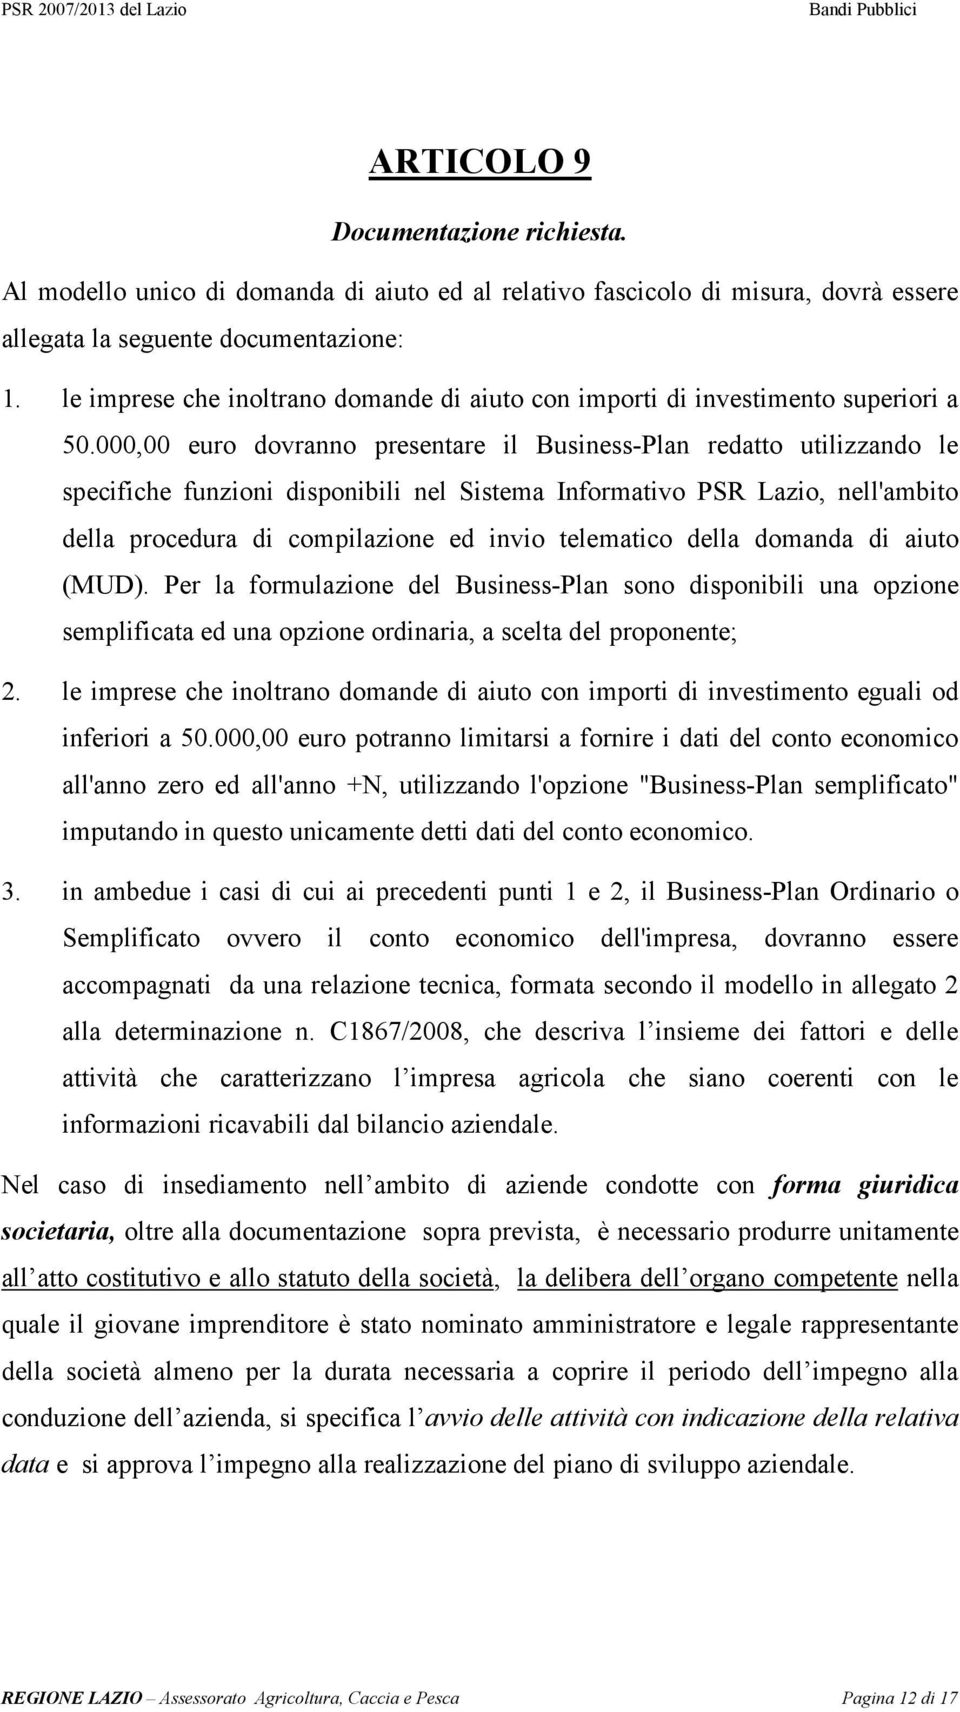 000,00 euro dovranno presentare il Business-Plan redatto utilizzando le specifiche funzioni disponibili nel Sistema Informativo PSR Lazio, nell'ambito della procedura di compilazione ed invio